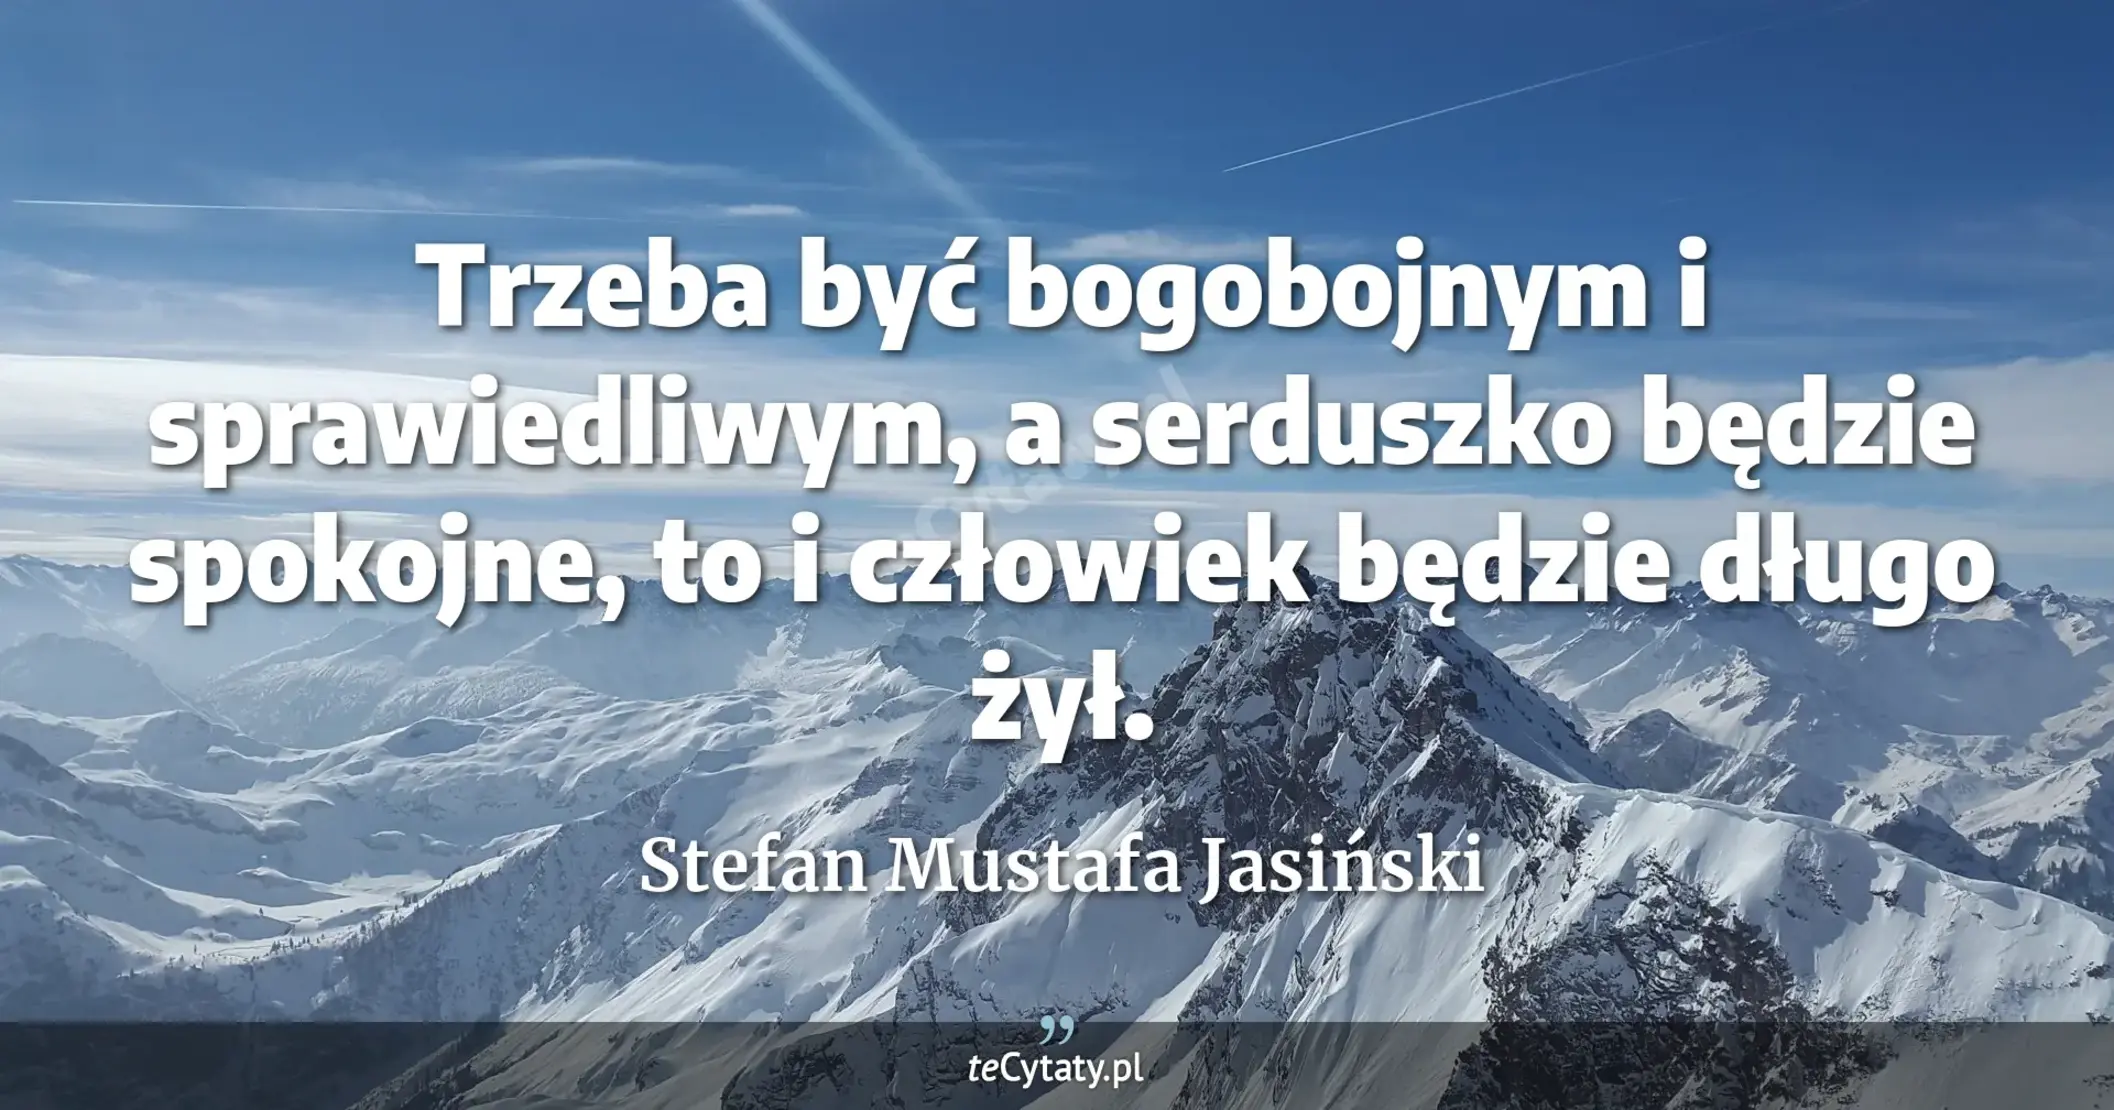 Trzeba być bogobojnym i sprawiedliwym, a serduszko będzie spokojne, to i człowiek będzie długo żył. - Stefan Mustafa Jasiński